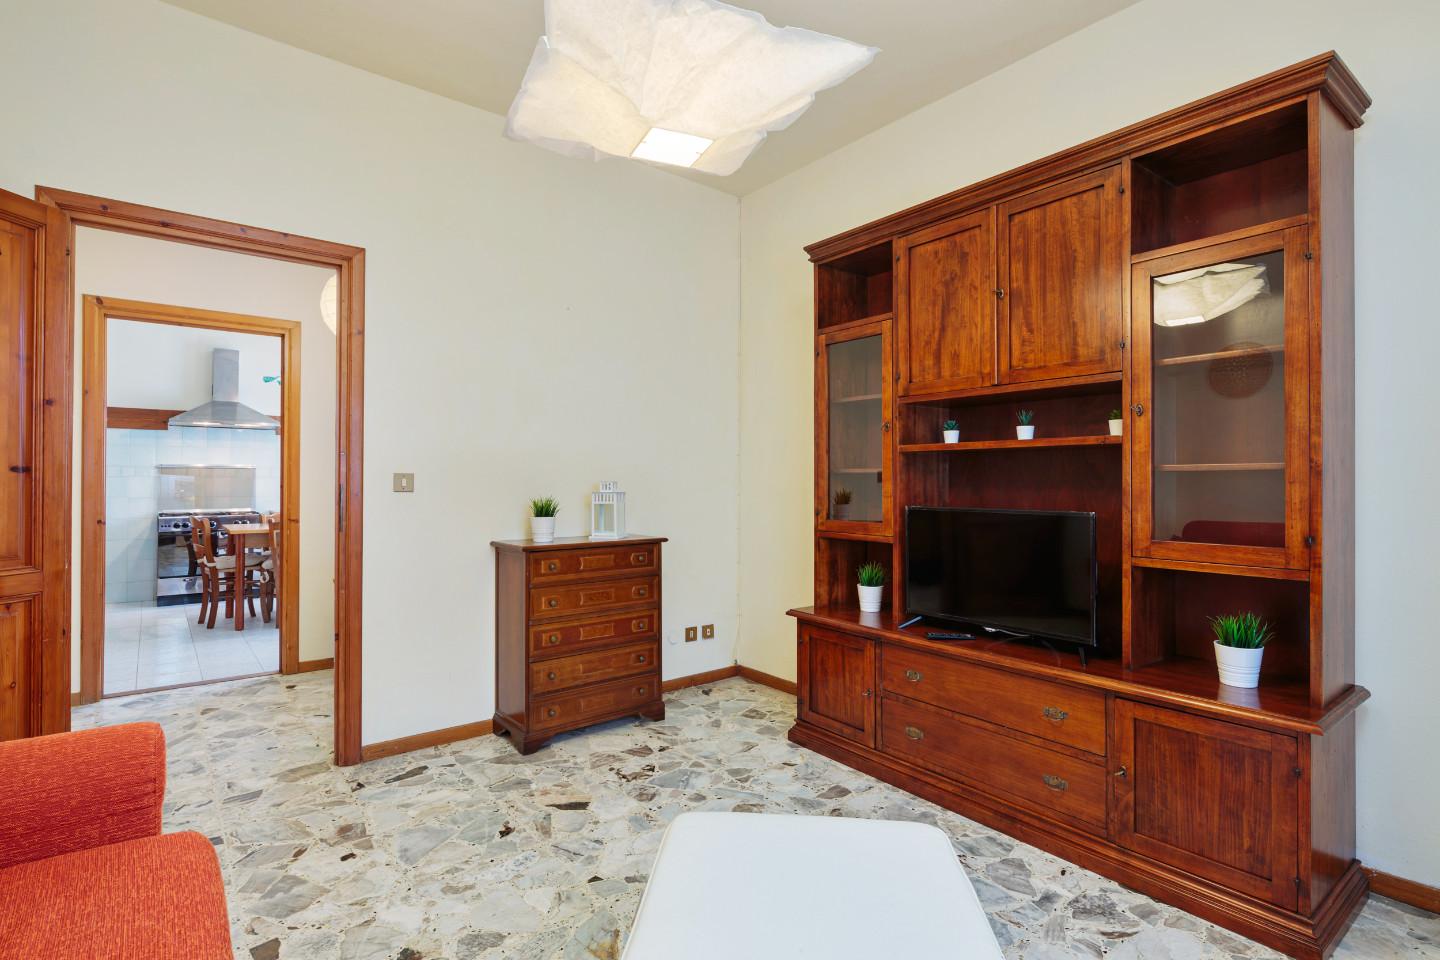 Soluzione Semindipendente in affitto a Cascina, 3 locali, prezzo € 850 | PortaleAgenzieImmobiliari.it